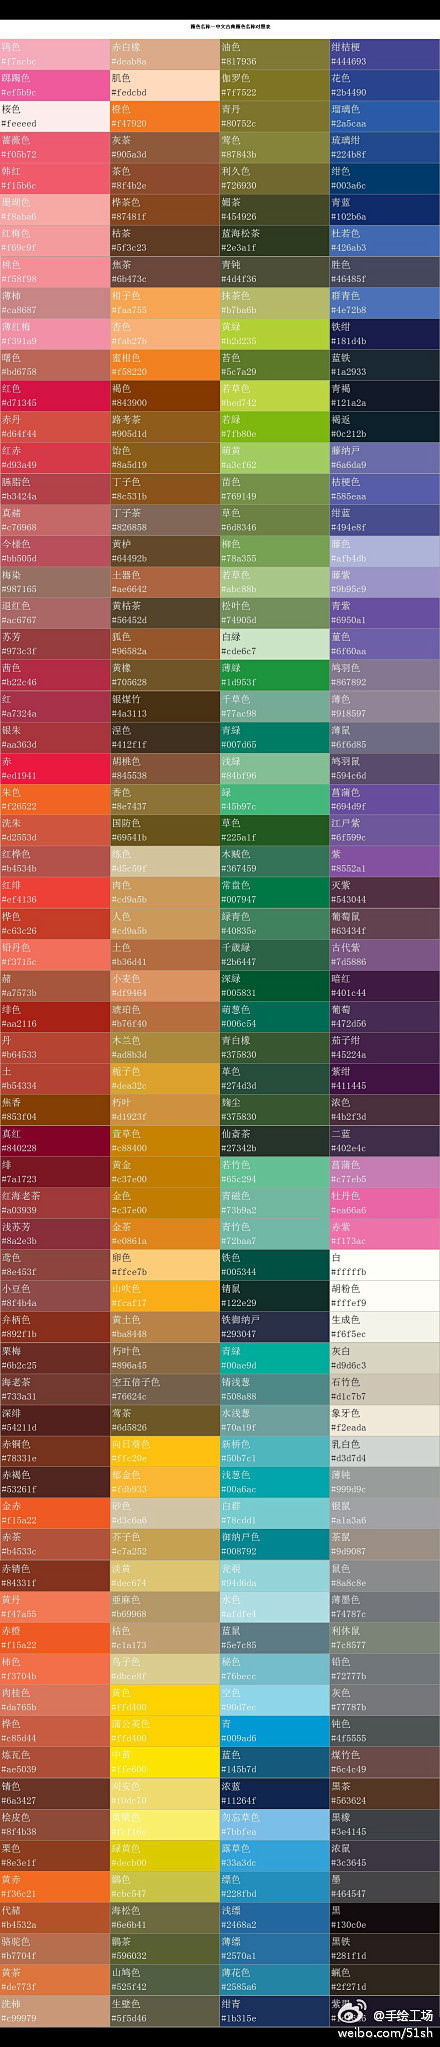 中文古典颜色名称对照表 -手绘工场的照片...